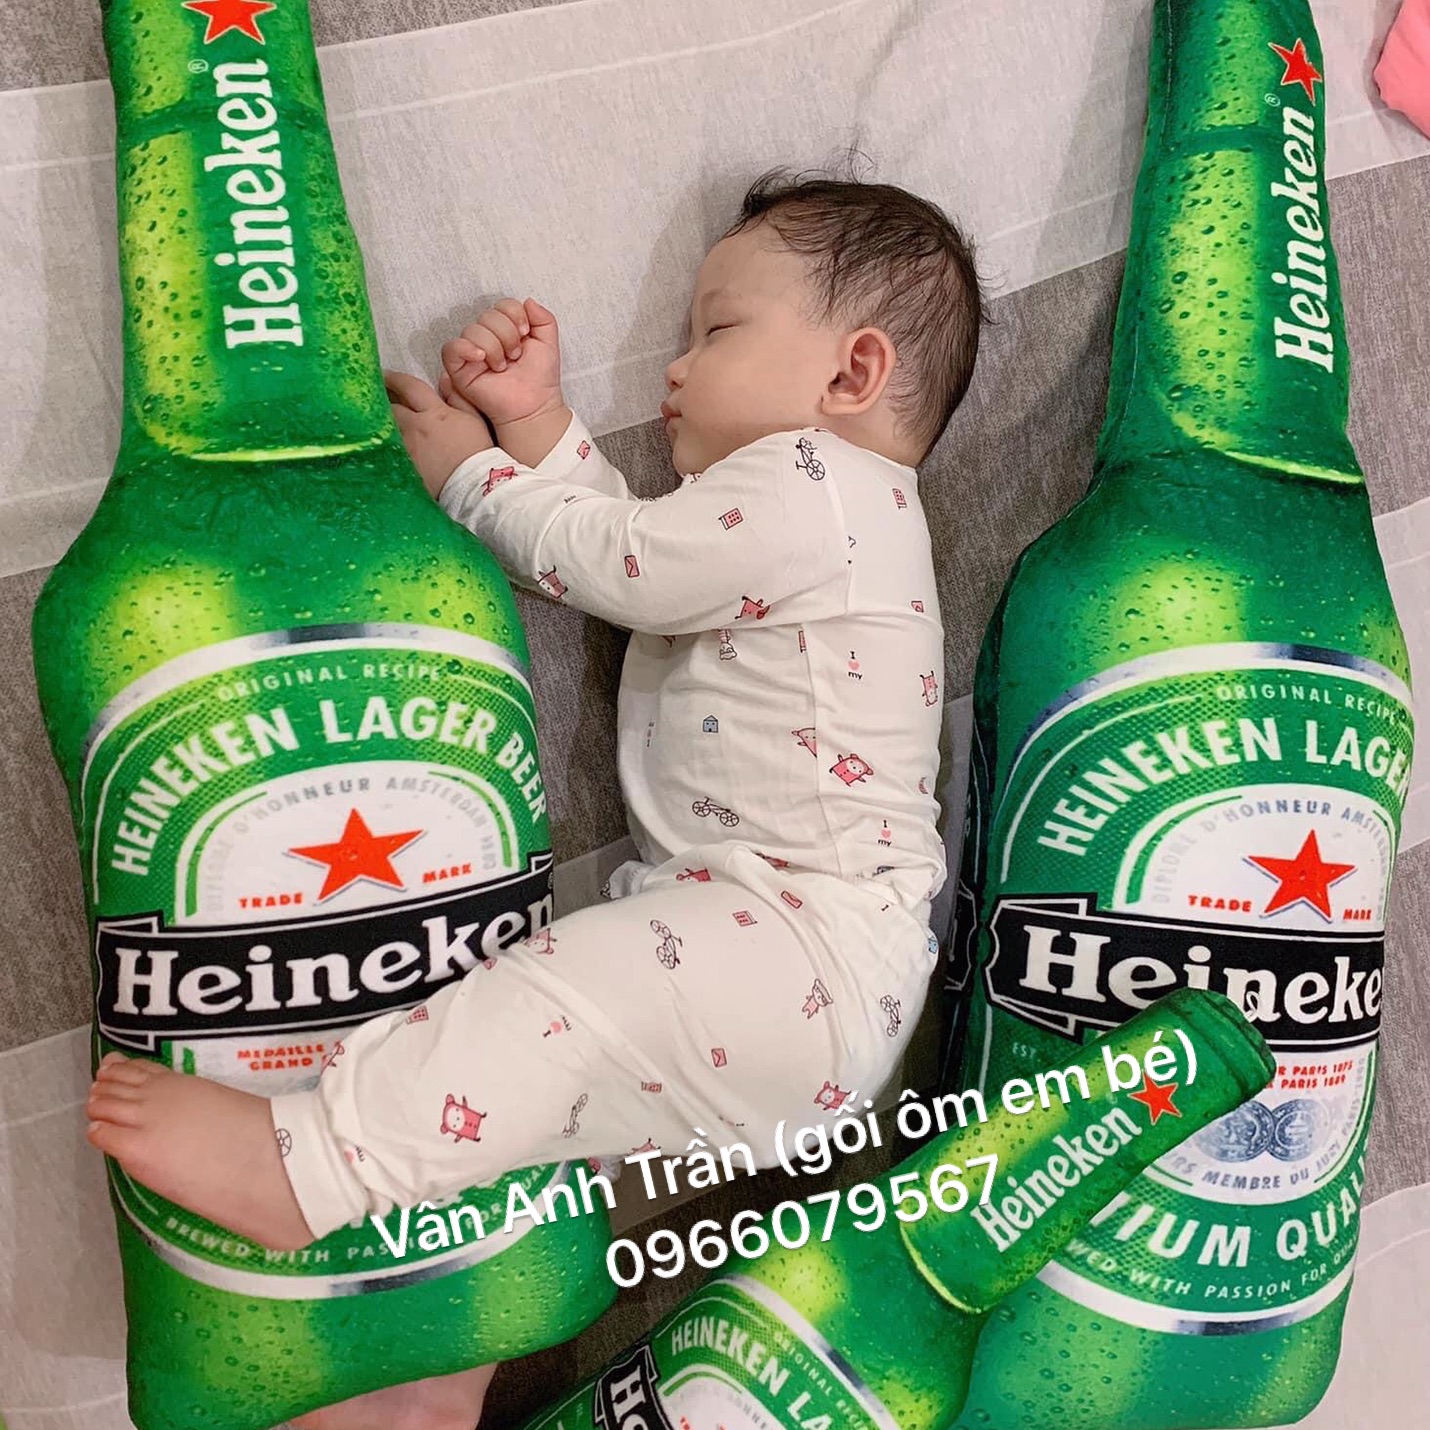 Heineken từng sản xuất chai hình chữ nhật để xây nhà, cần uống hết 1.000  chai mới được ngôi nhà gần 10 m2